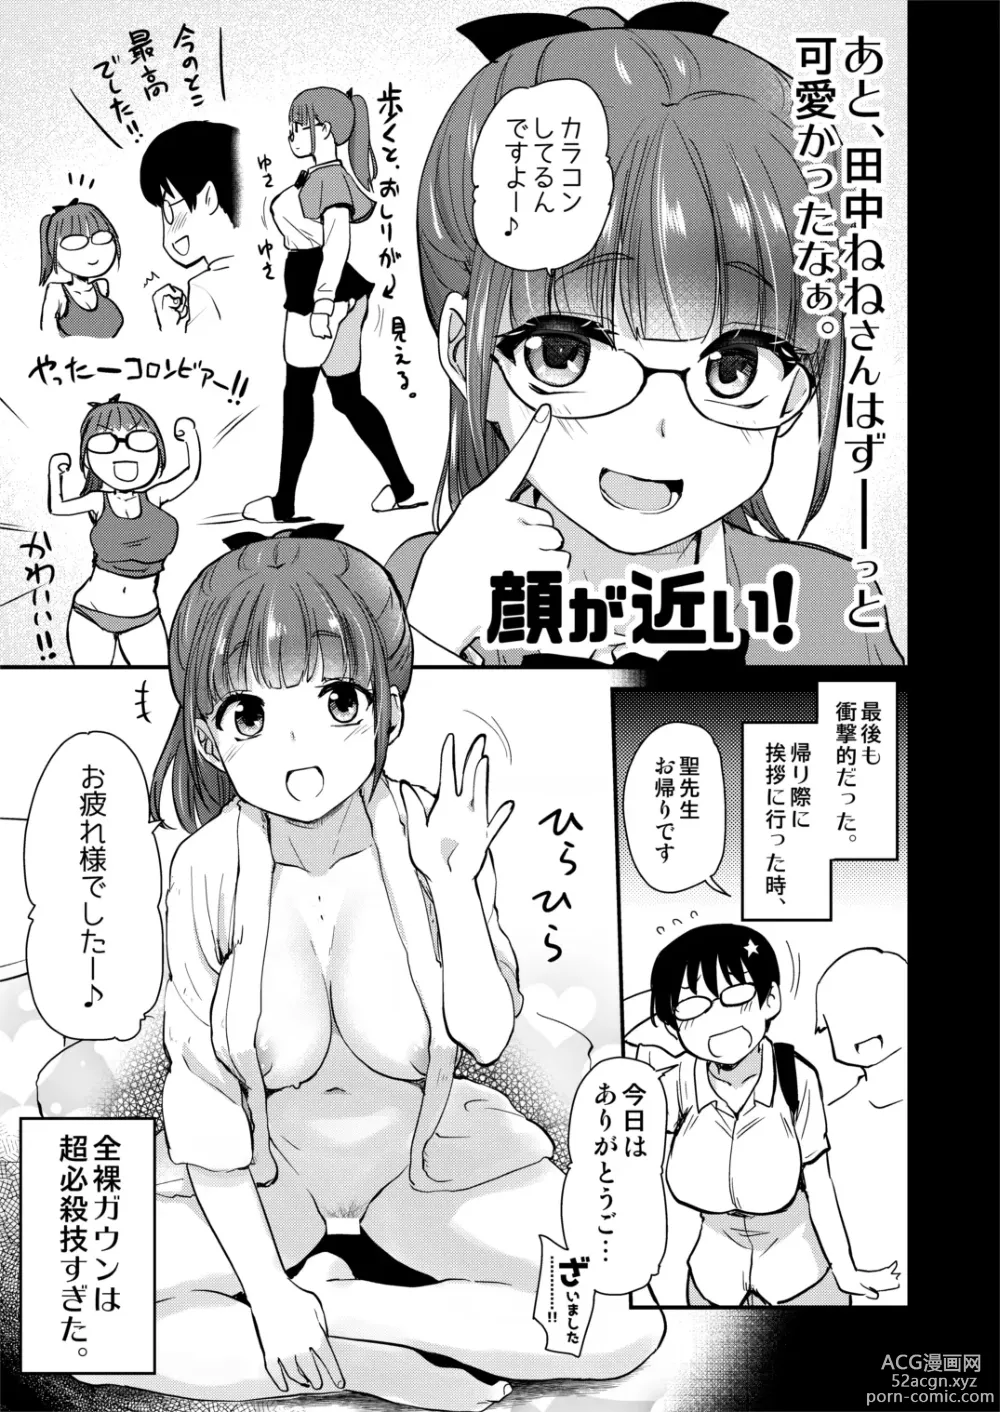 Page 24 of doujinshi Jibun no Kaita Manga ga Jissha AV ni!? Sekkaku nano de Satsuei Genba no Kengaku ni Ittekimashita.